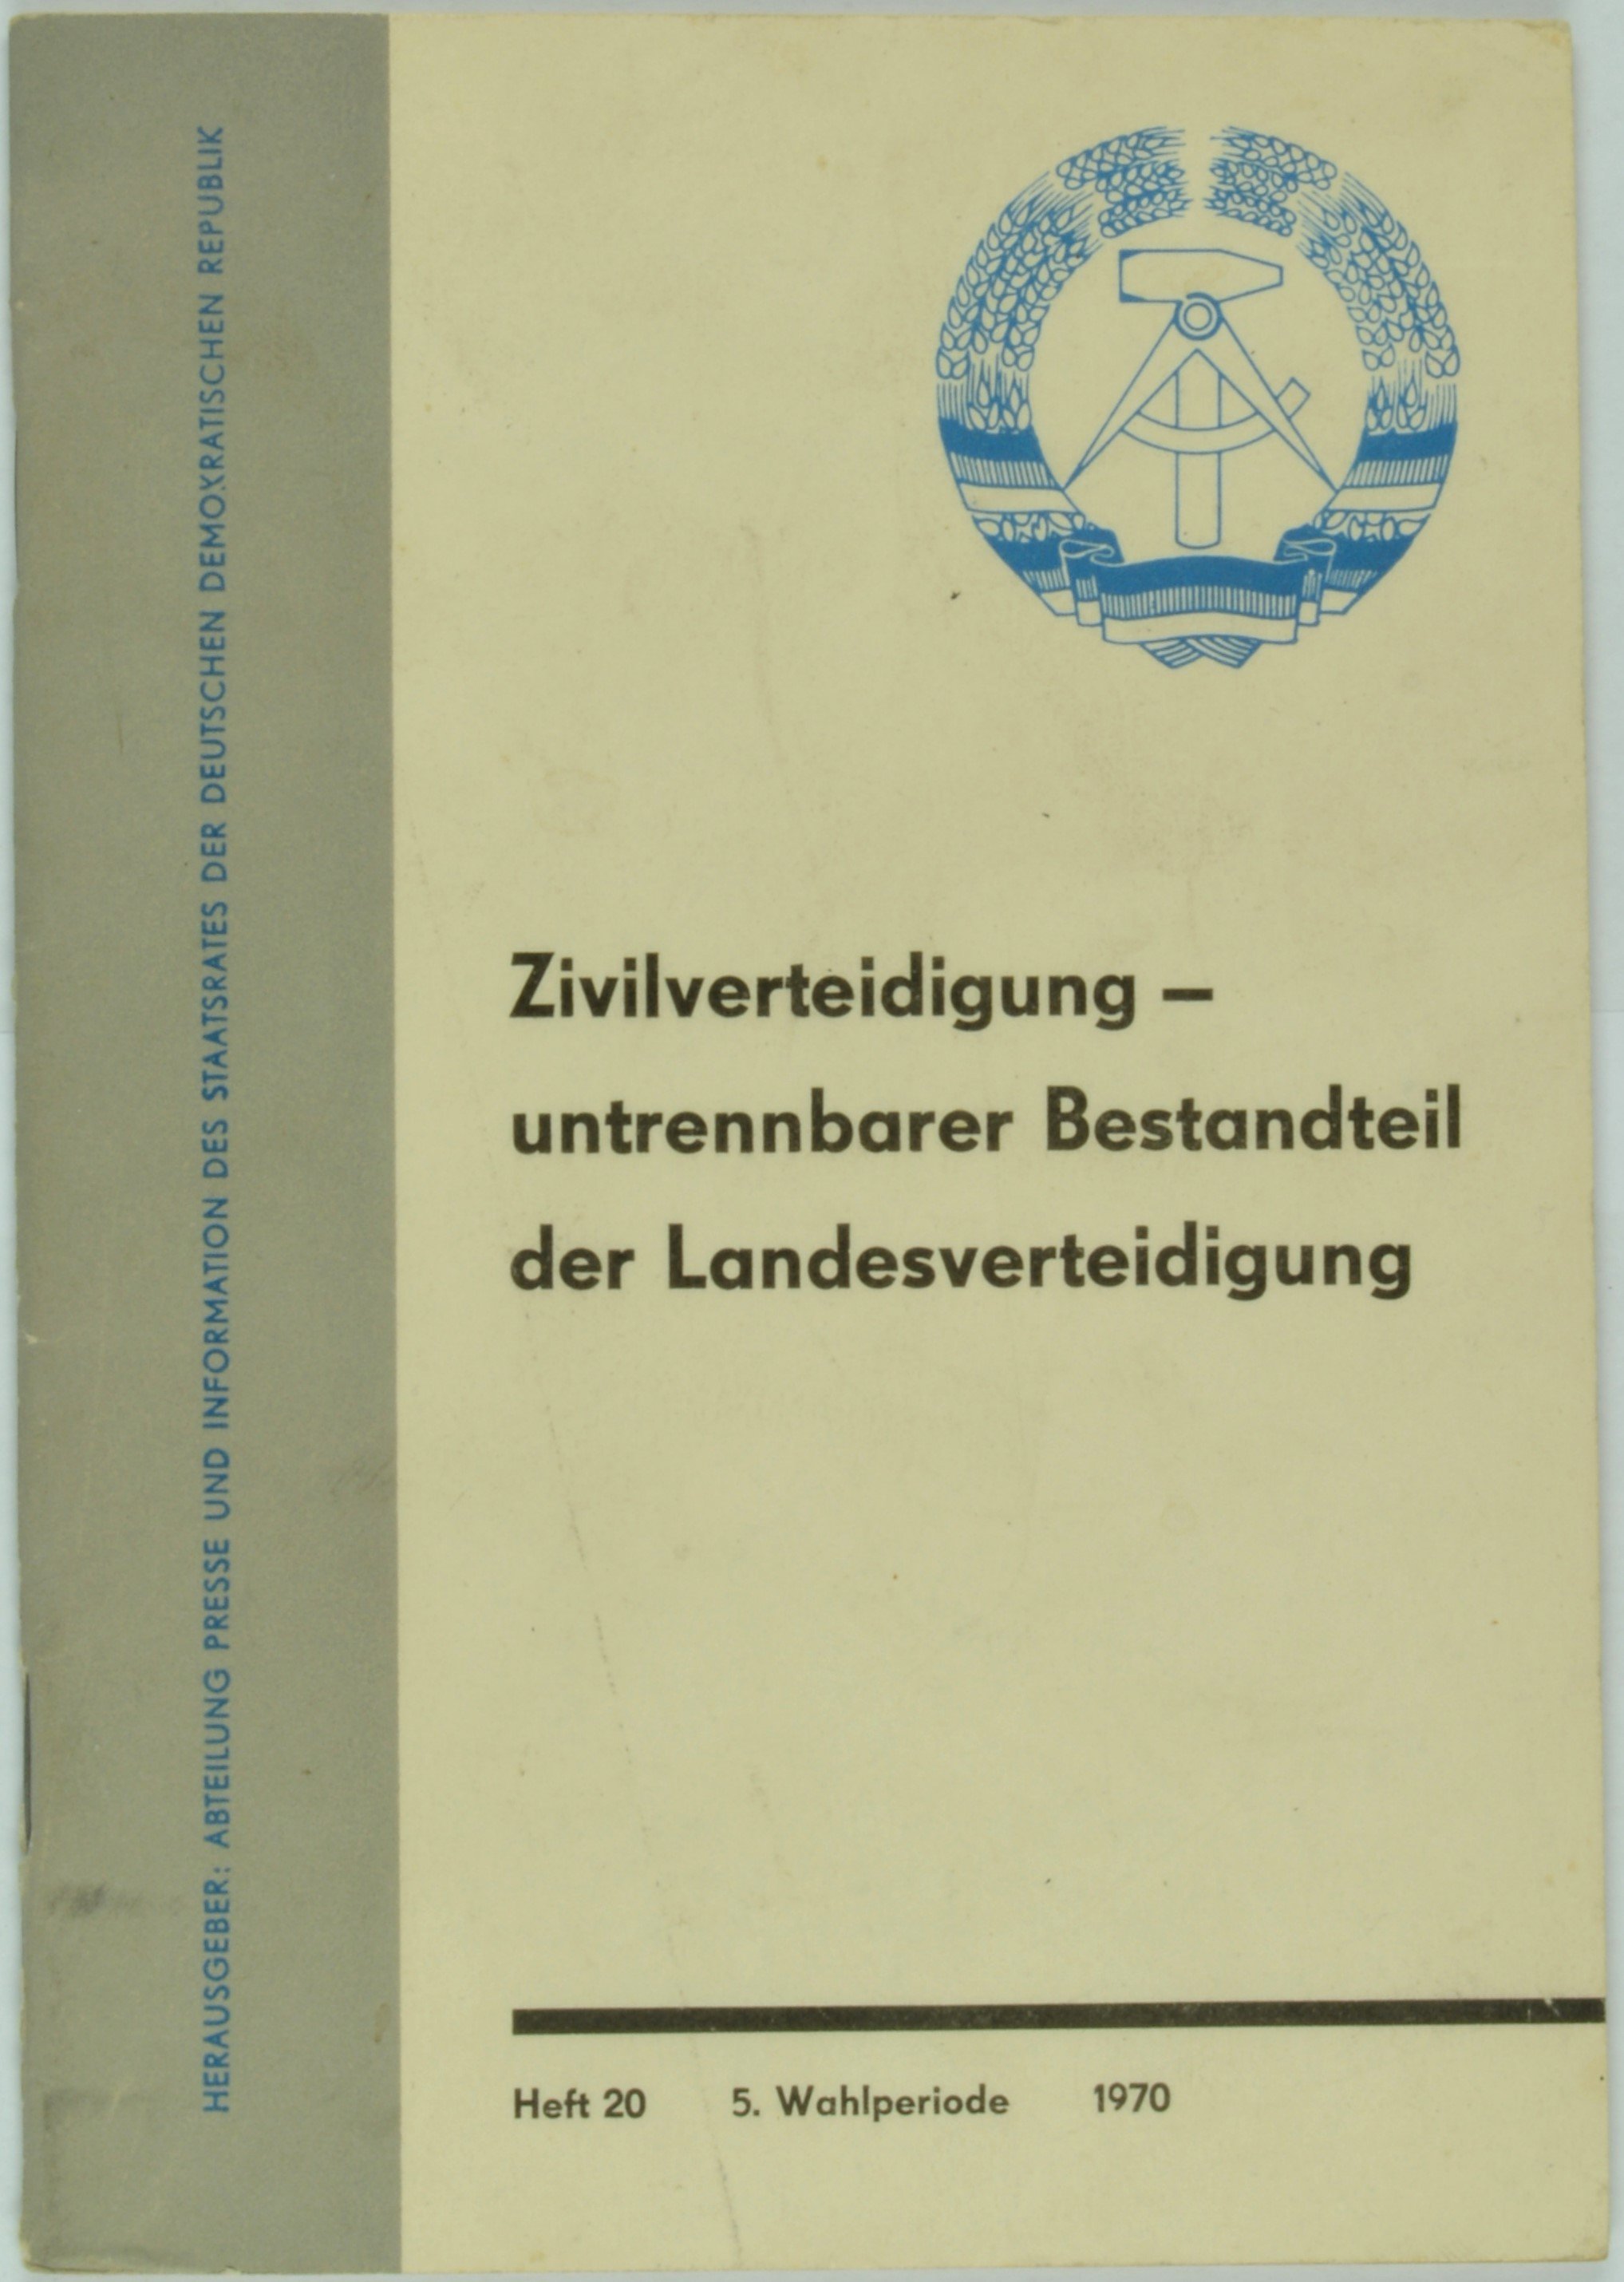 Broschüre "Zivilverteidigung - untrennbarer Bestandteil der Landesverteidigung" 20 (1970) (DDR Geschichtsmuseum im Dokumentationszentrum Perleberg CC BY-SA)